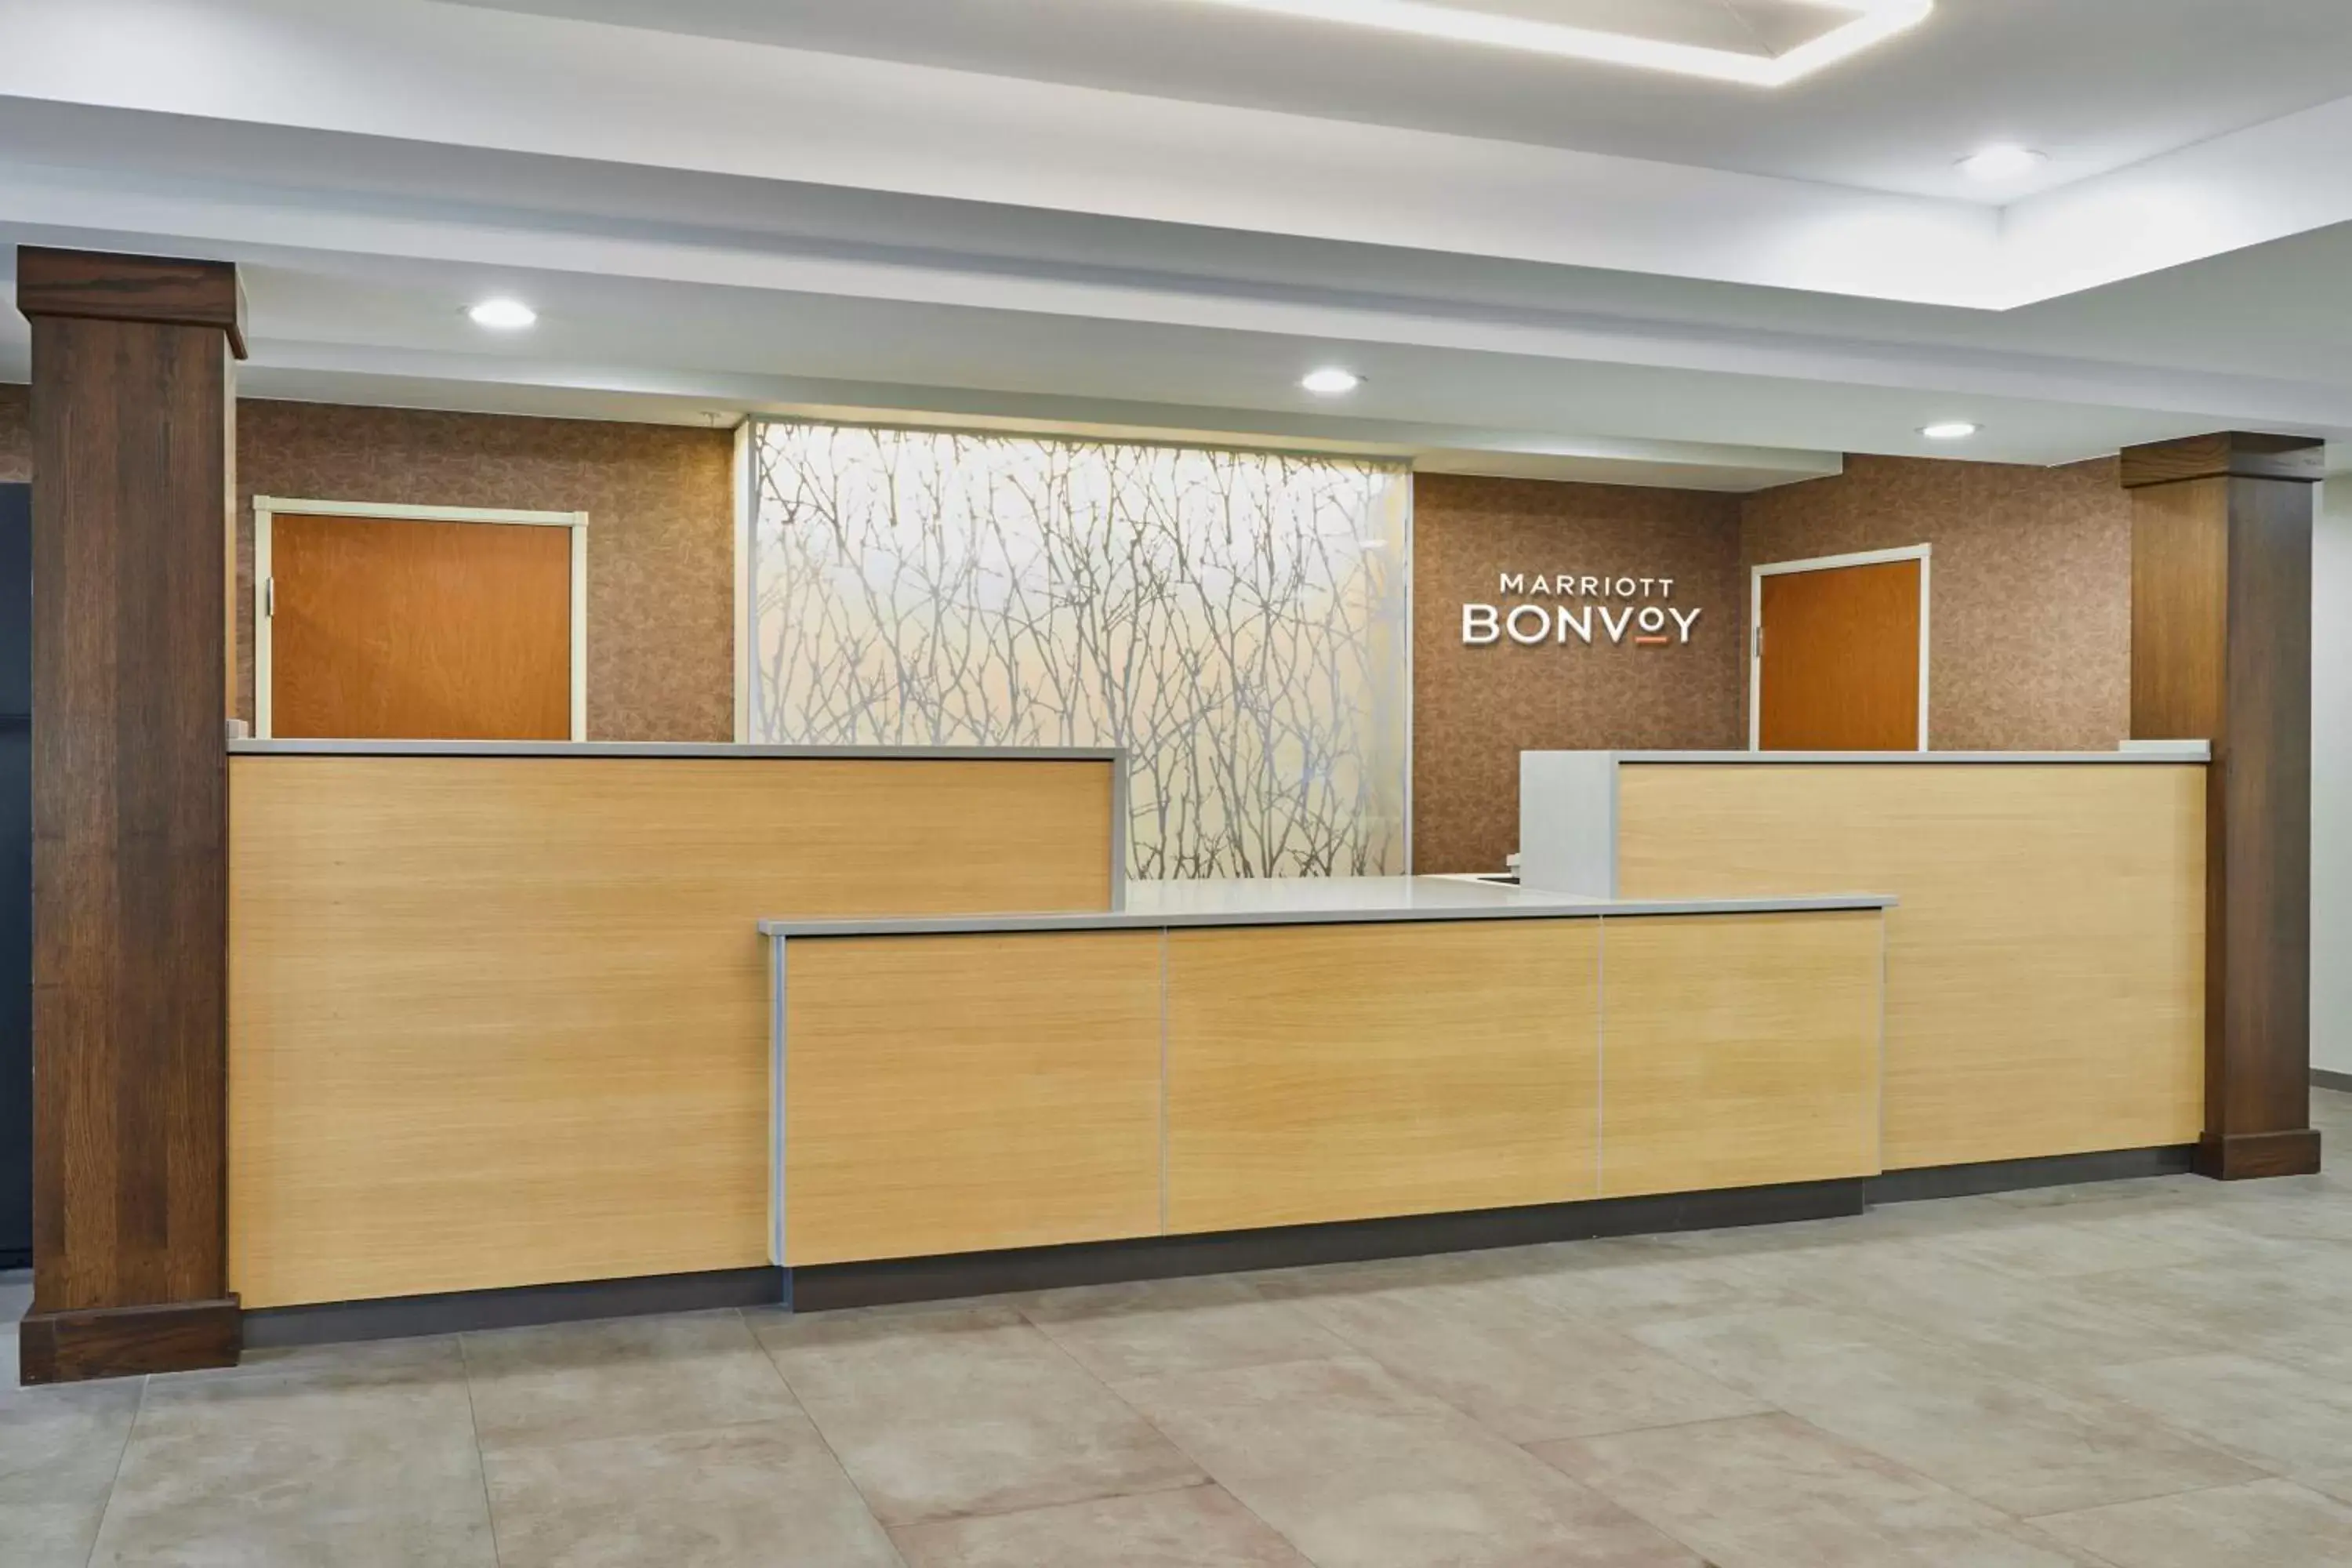 Lobby or reception, Lobby/Reception in Fairfield Inn & Suites Burlington